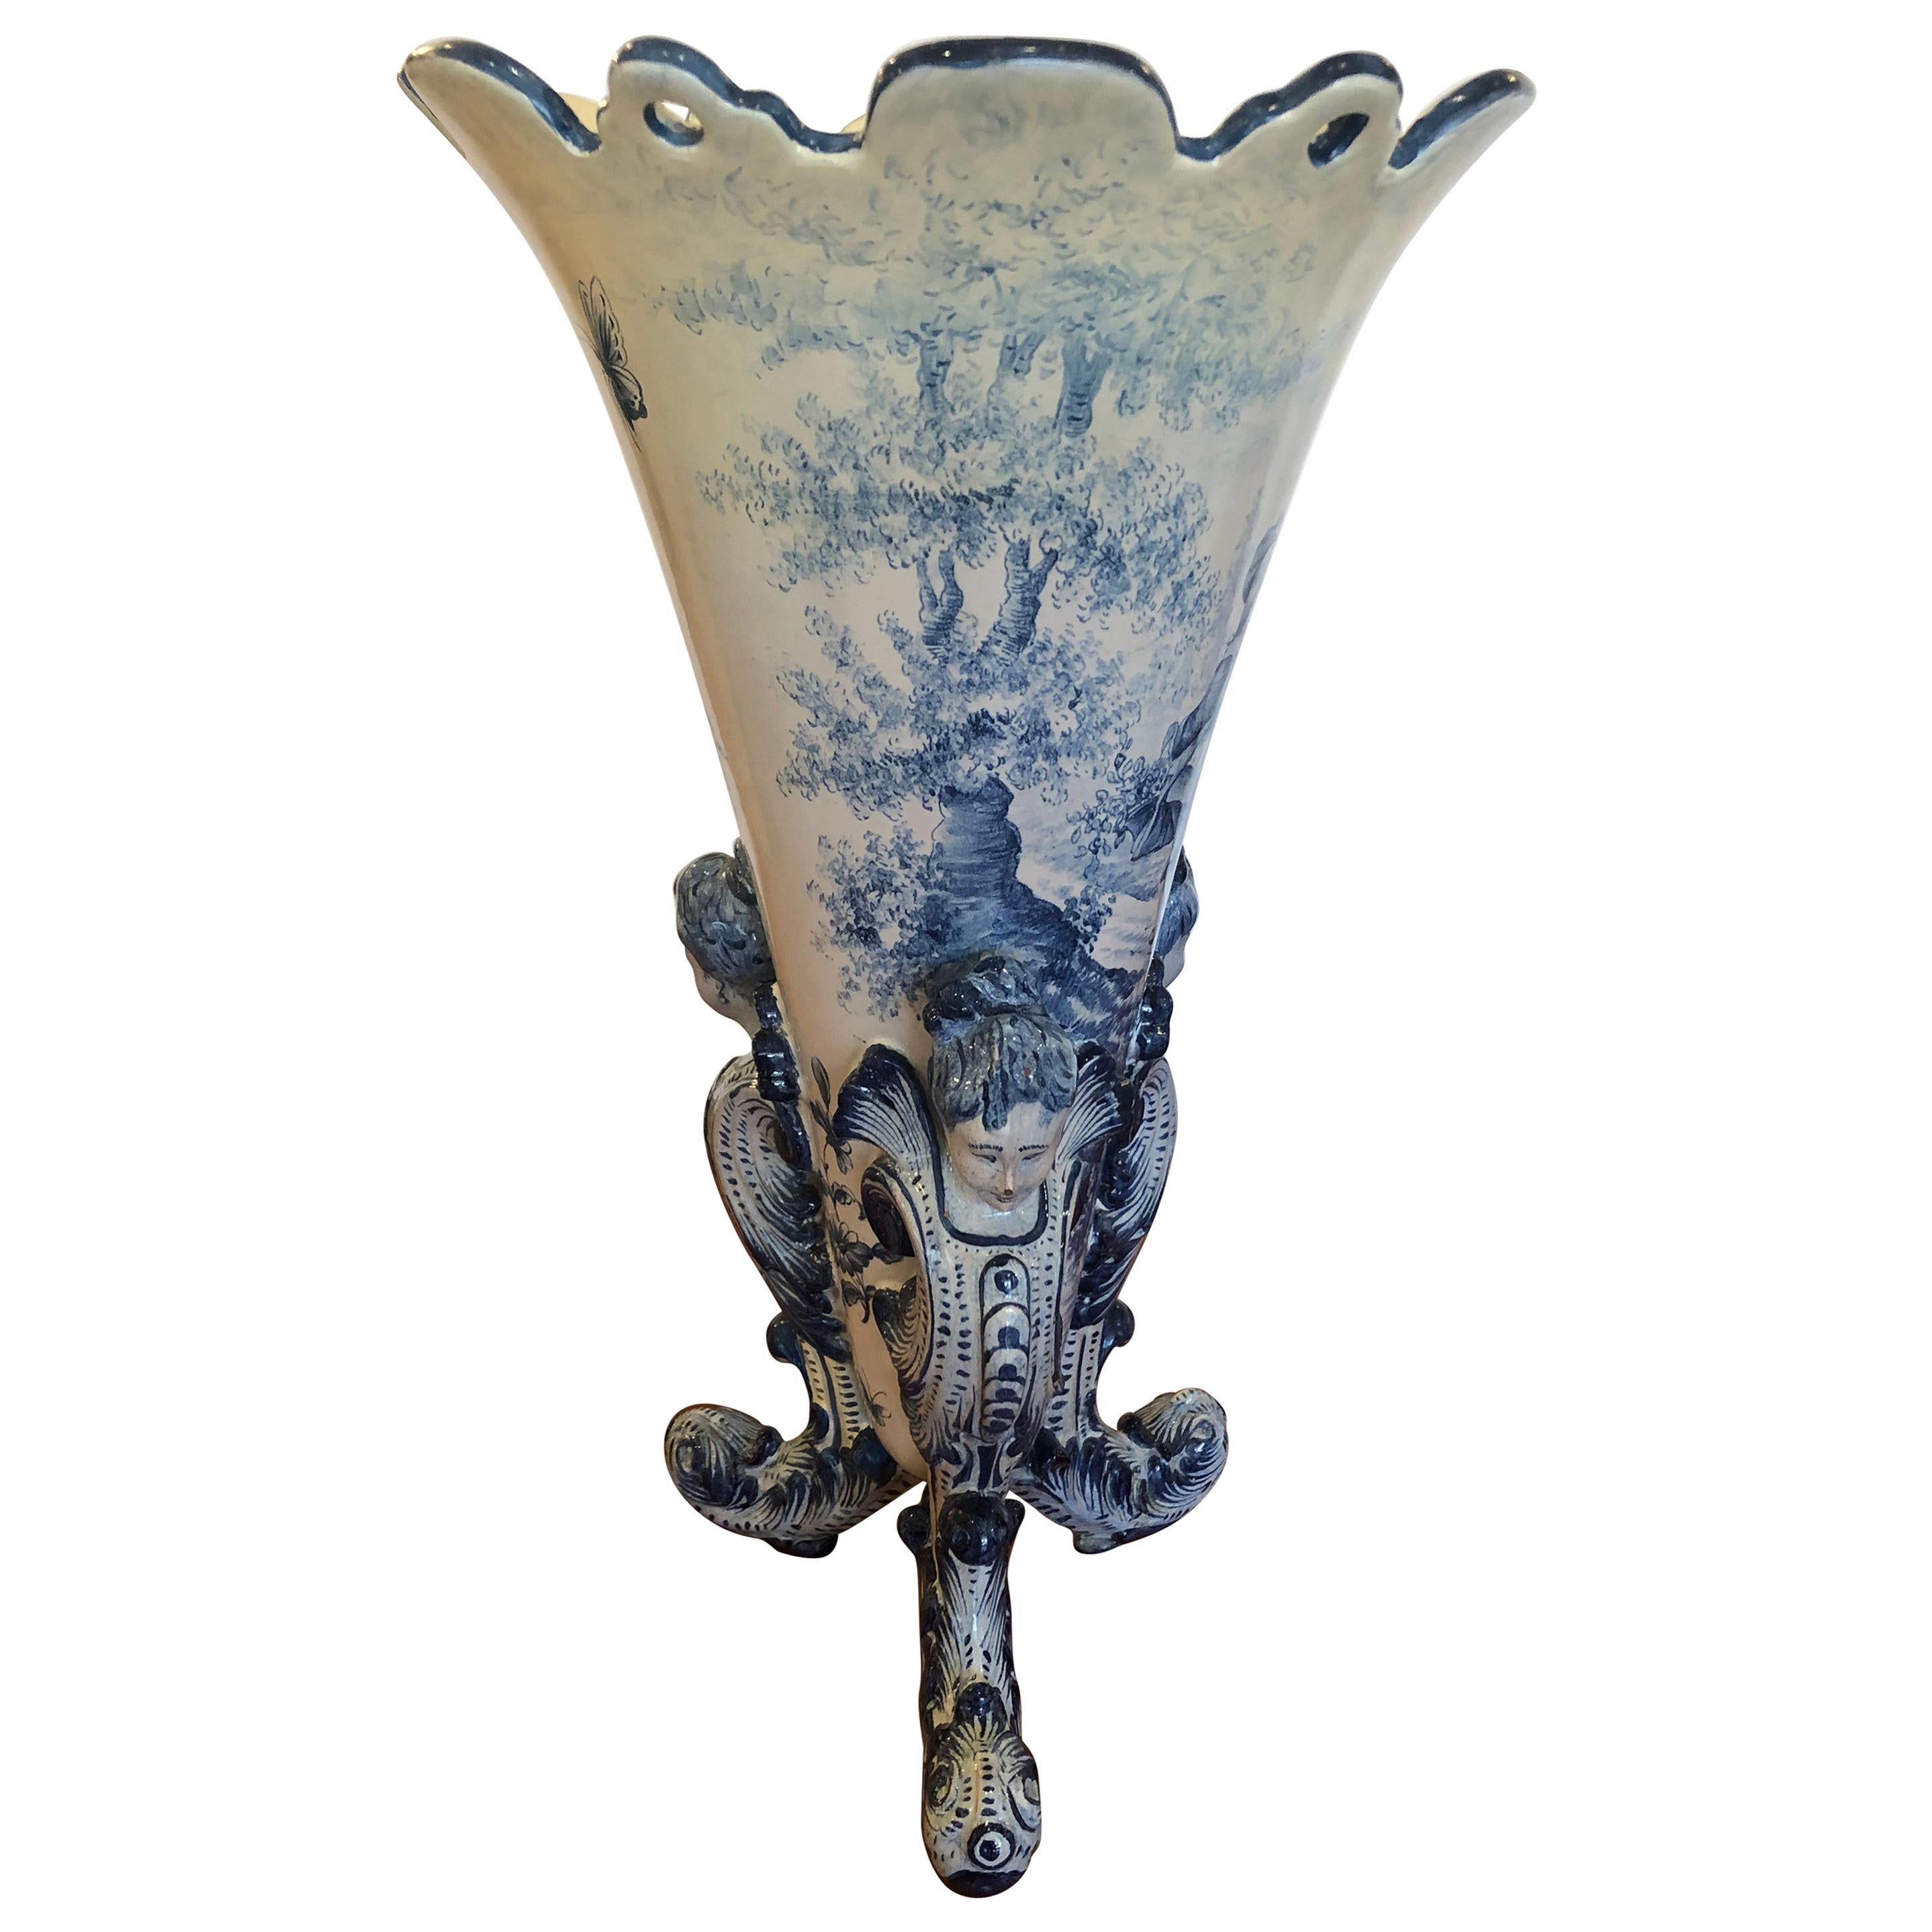 Wunderschöne antike große italienische blau-weiße figurale Vase aus Keramik